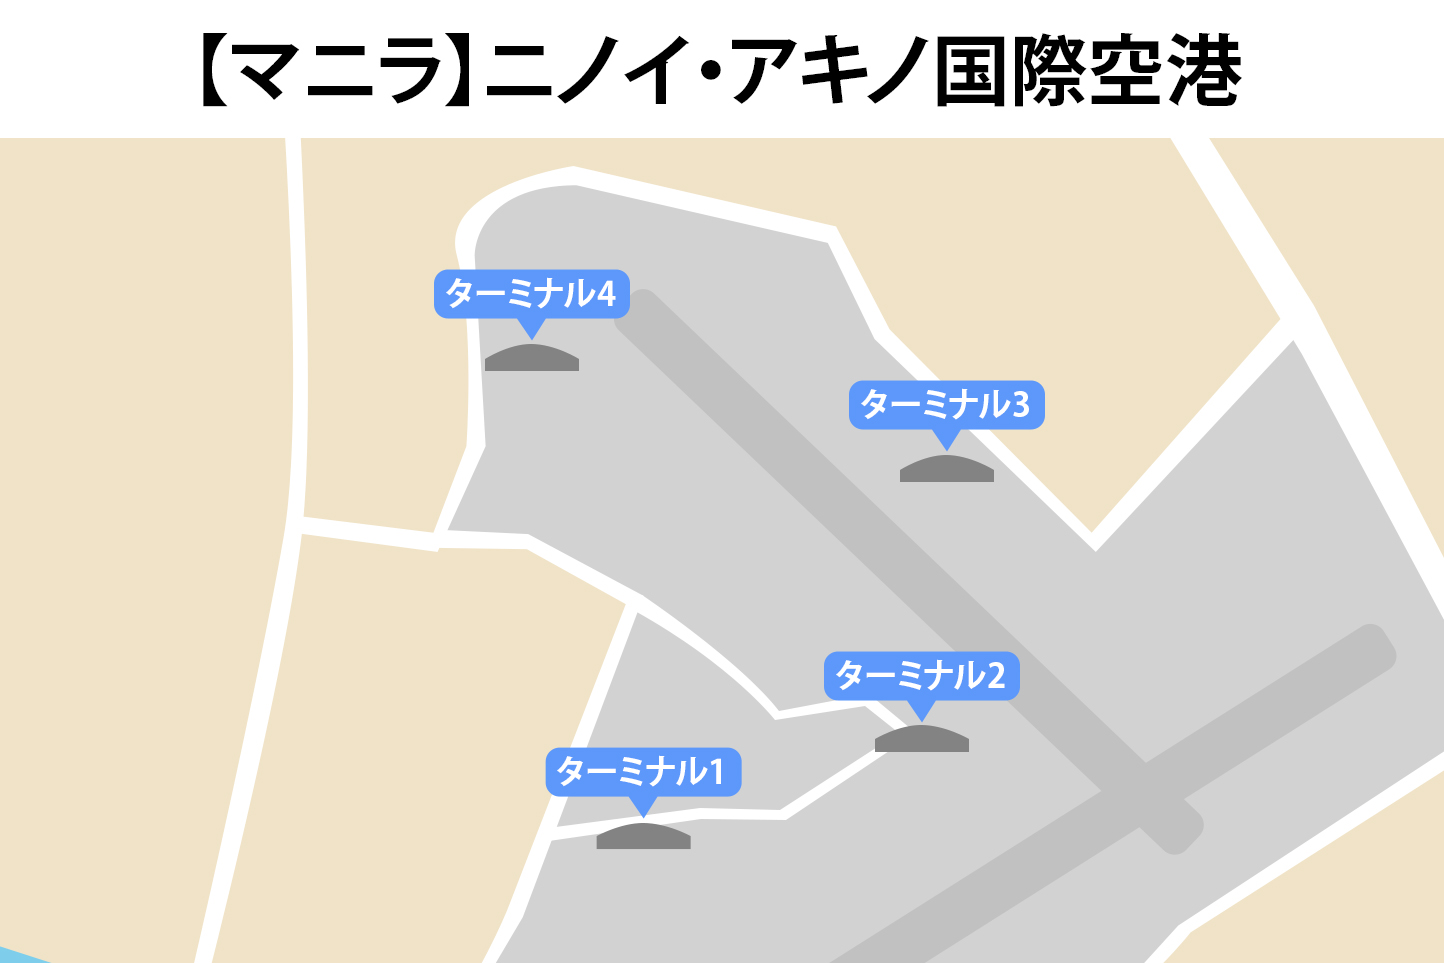 マニラのニノイ・アキノ国際空港の各ターミナル地図